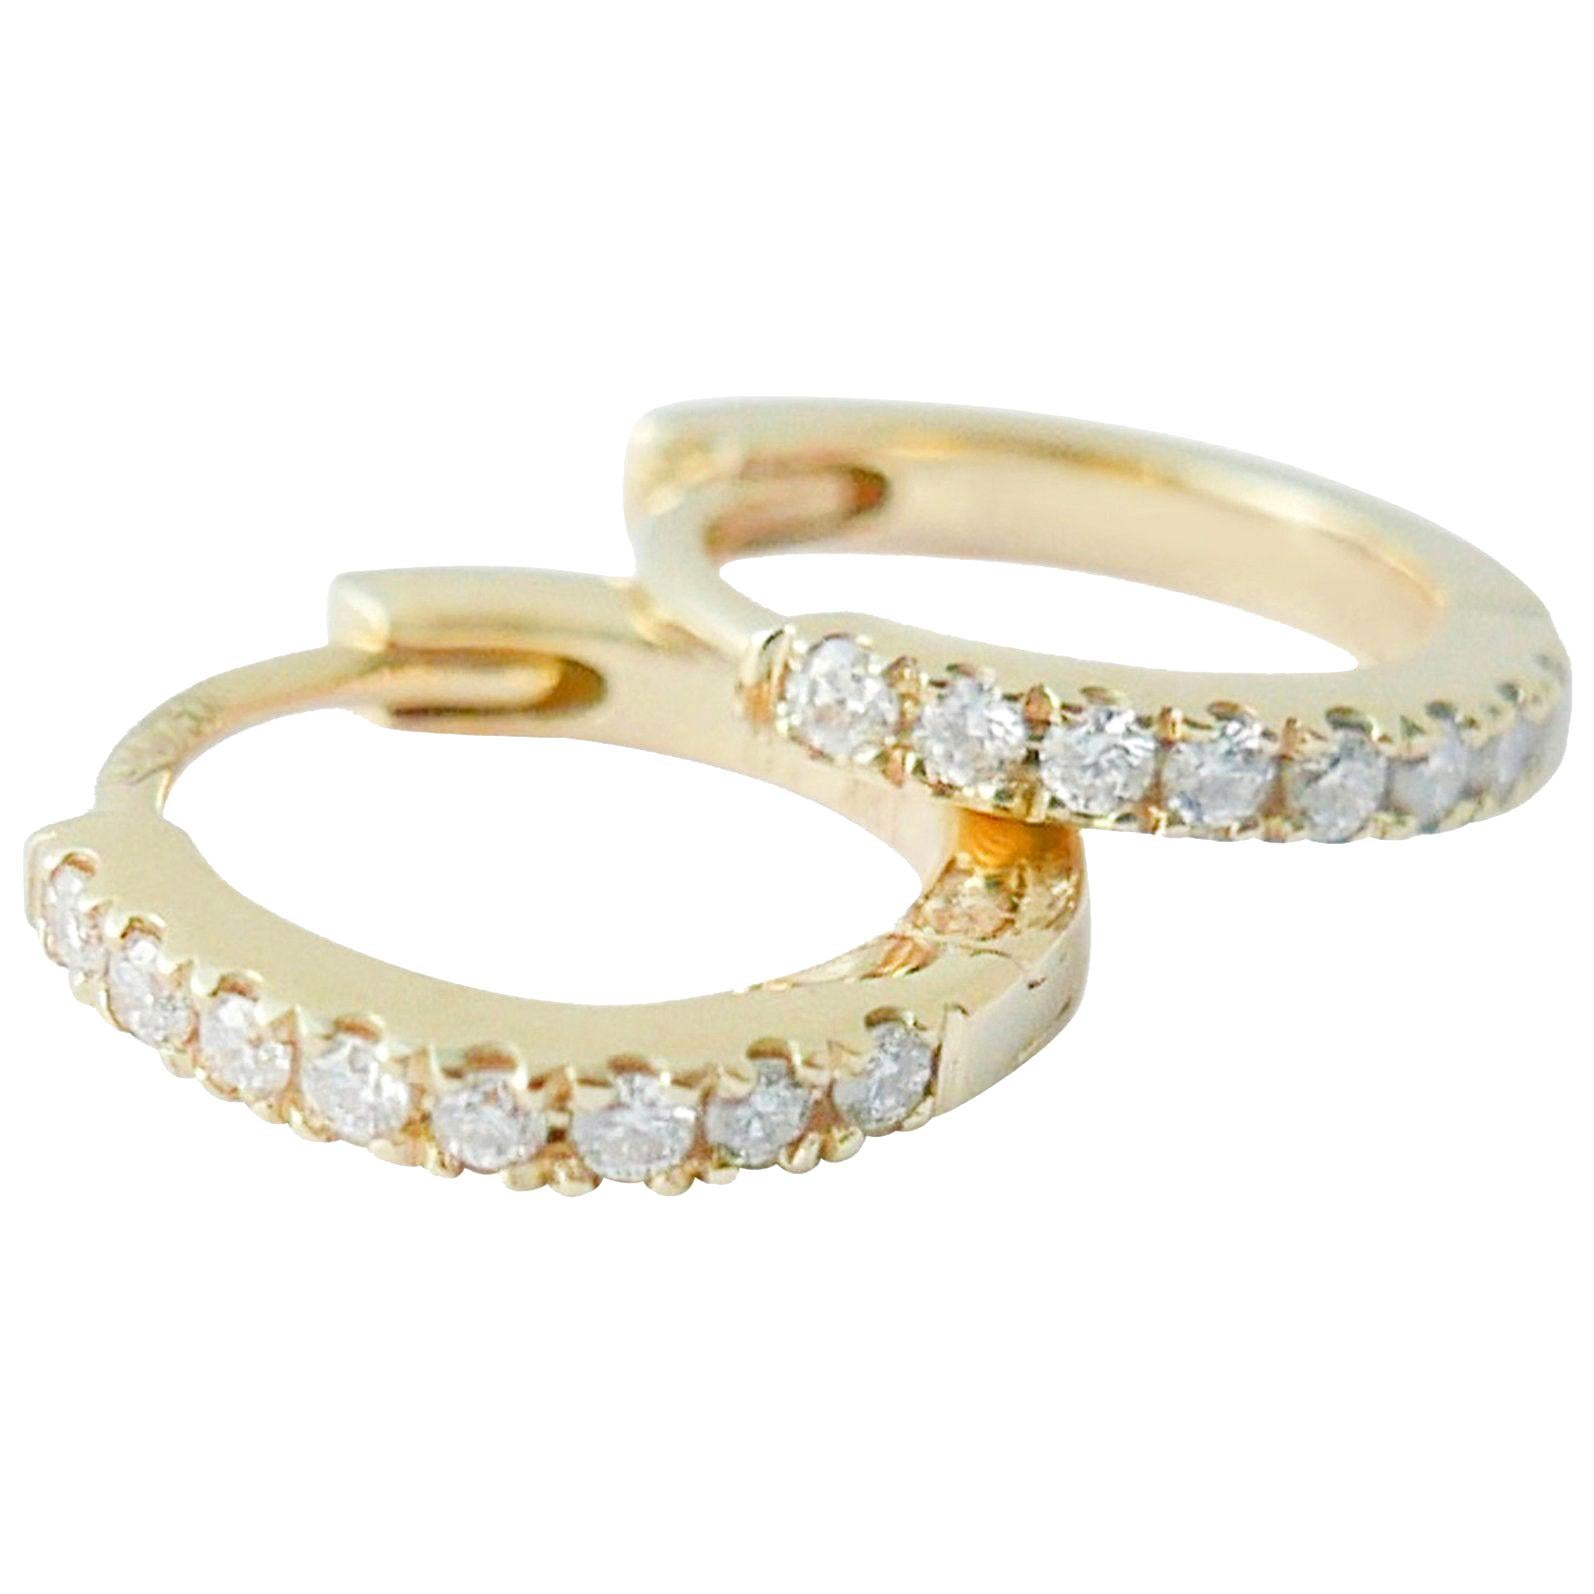 Mini Diamond Hoop Earrings in 18 Karat Gold by Allison Bryan